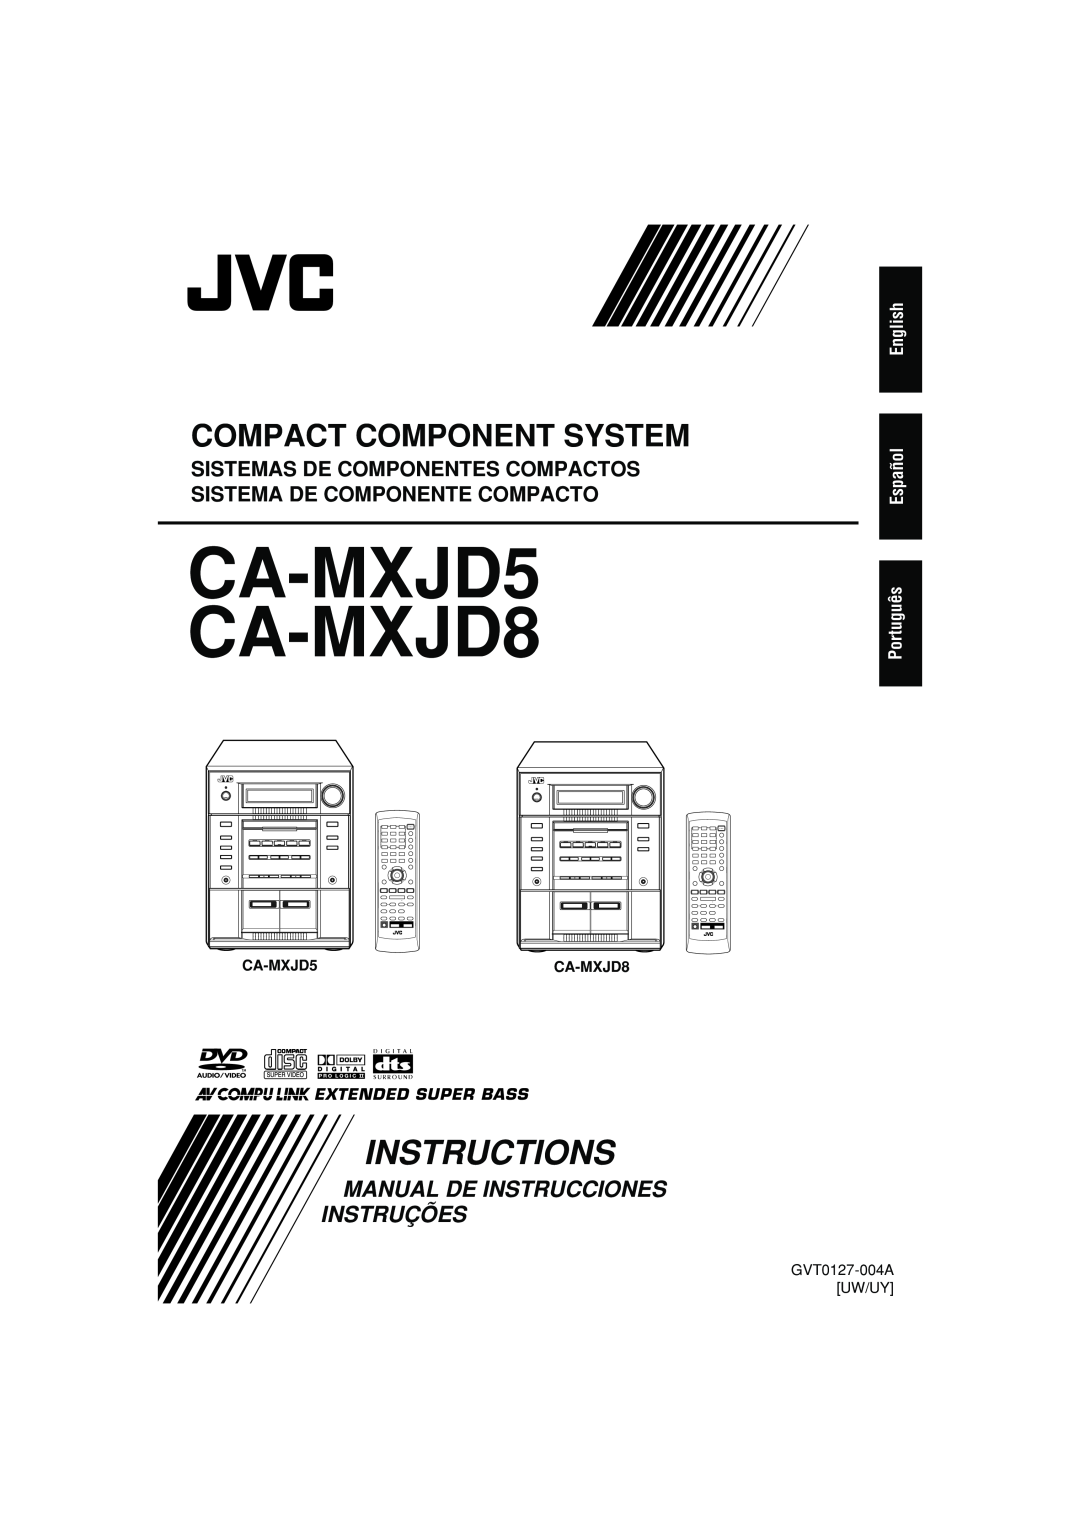 JVC CA-MXJD5 CA-MXJD8, Instructions, Compact Component System, Manual De Instrucciones Instruções, Extended Super Bass 